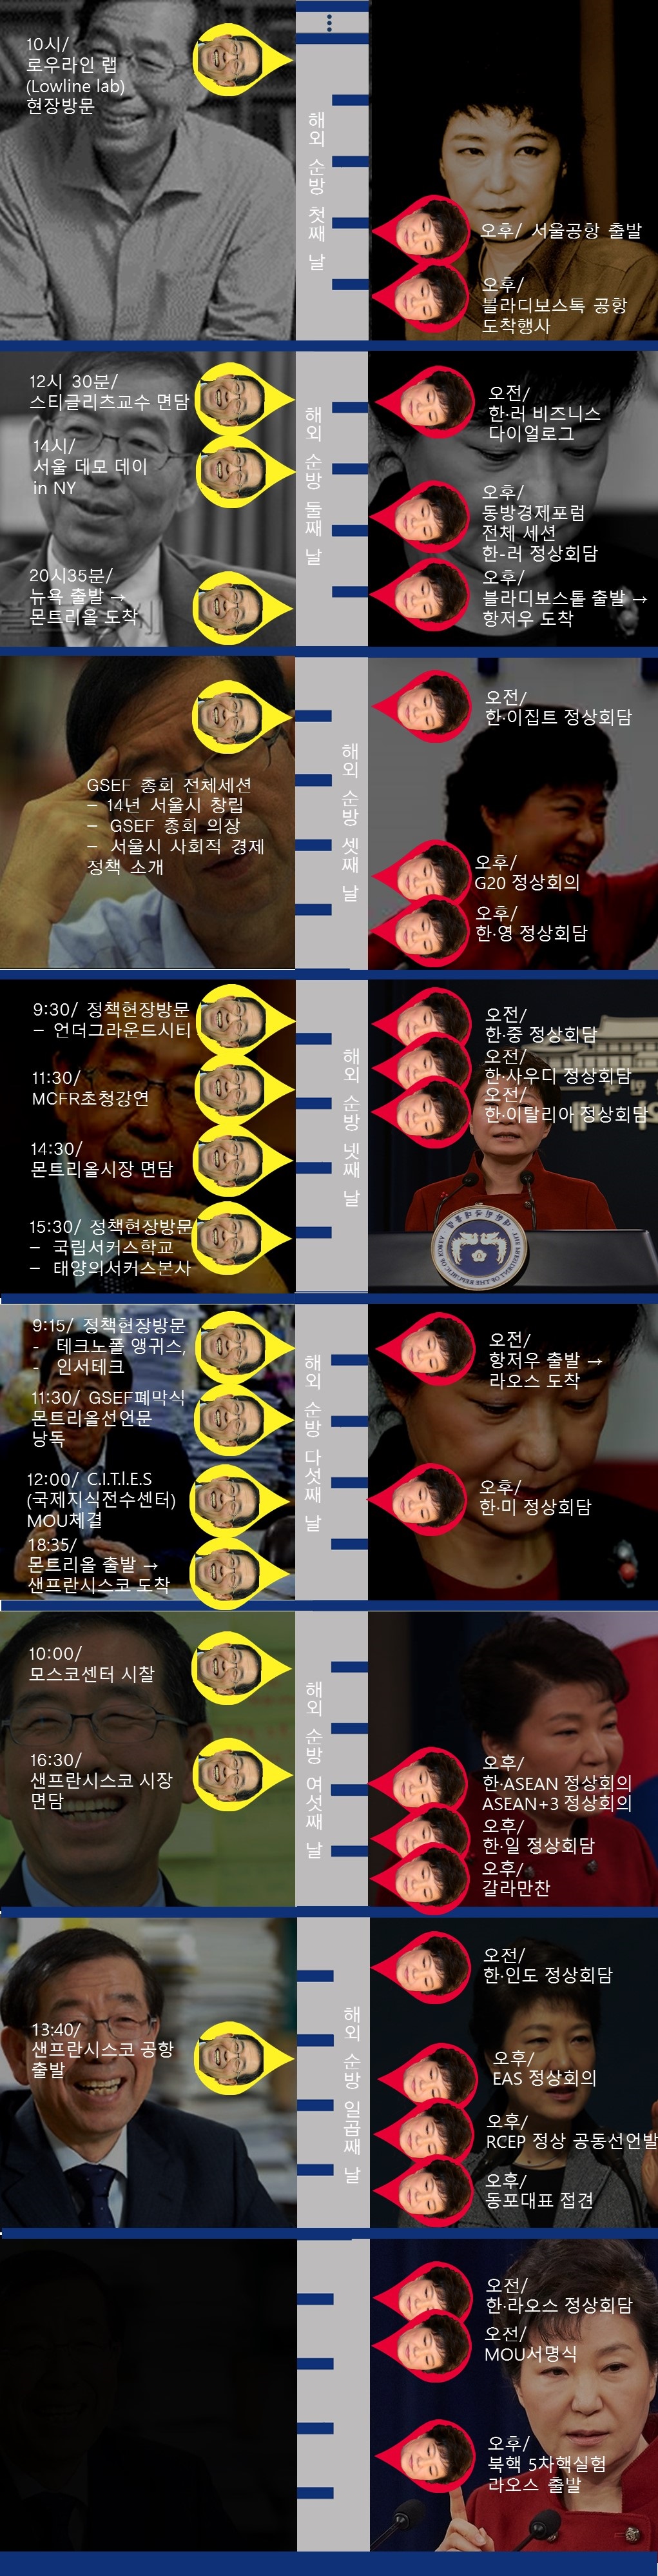 지난 9월 박근혜, 박원순 두 행정가의 순방을 비교했습니다.